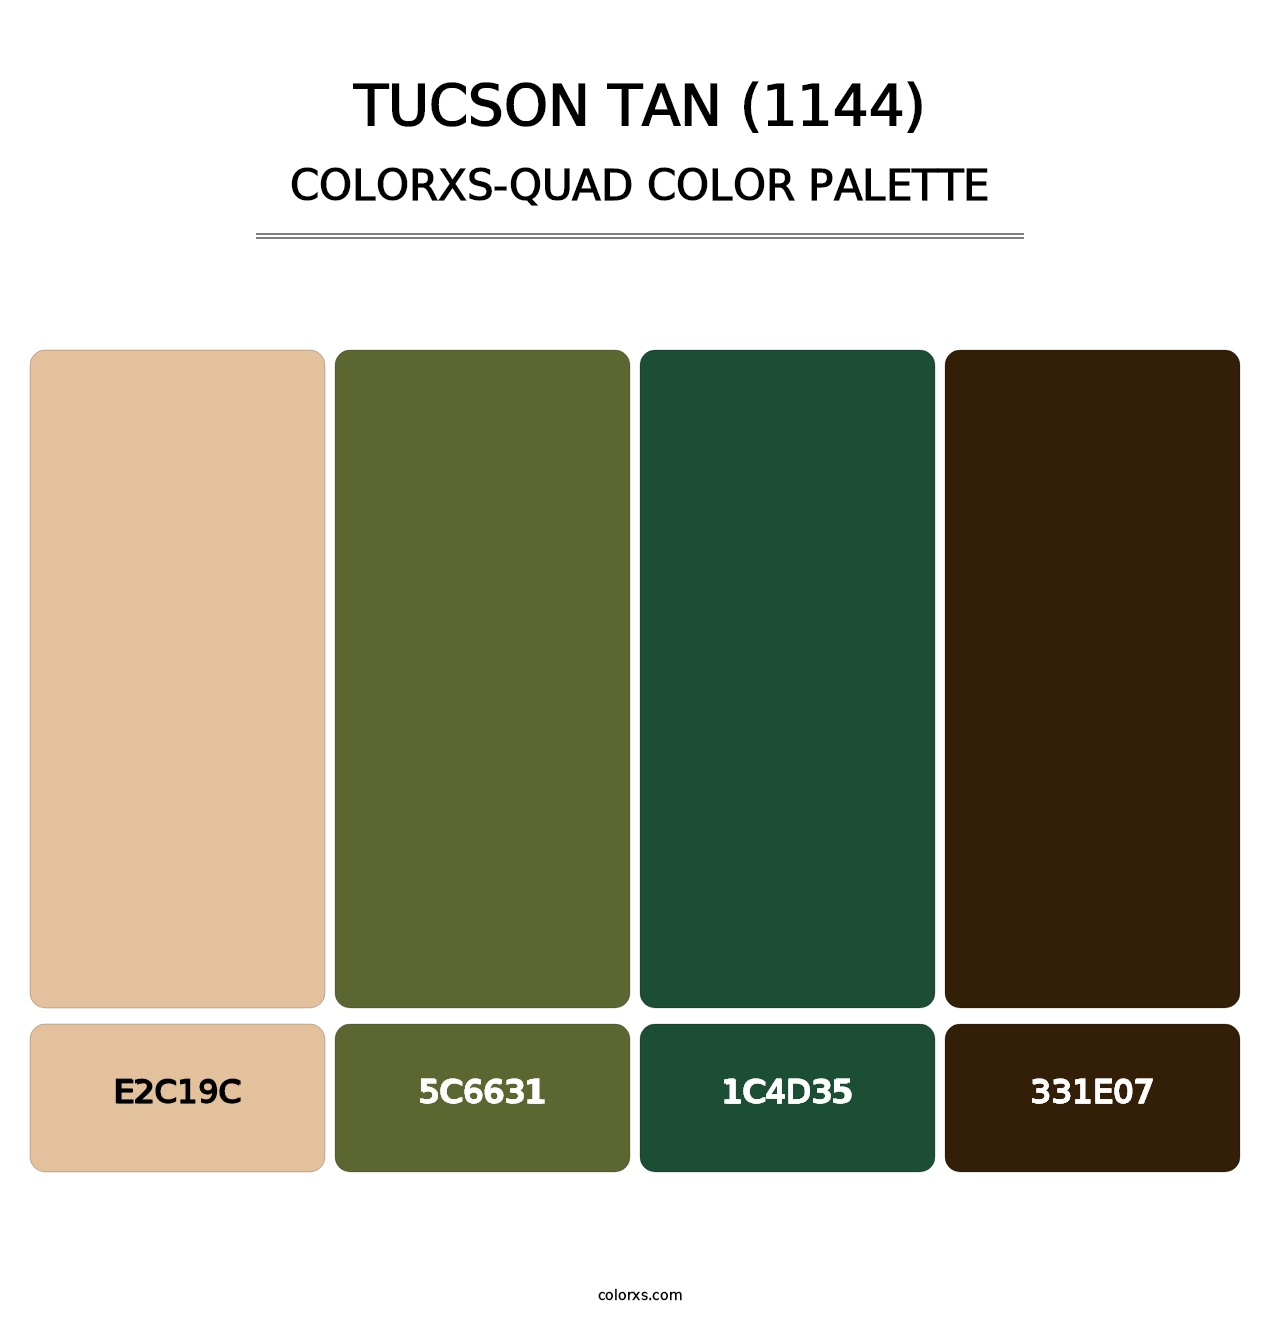 Tucson Tan (1144) - Colorxs Quad Palette